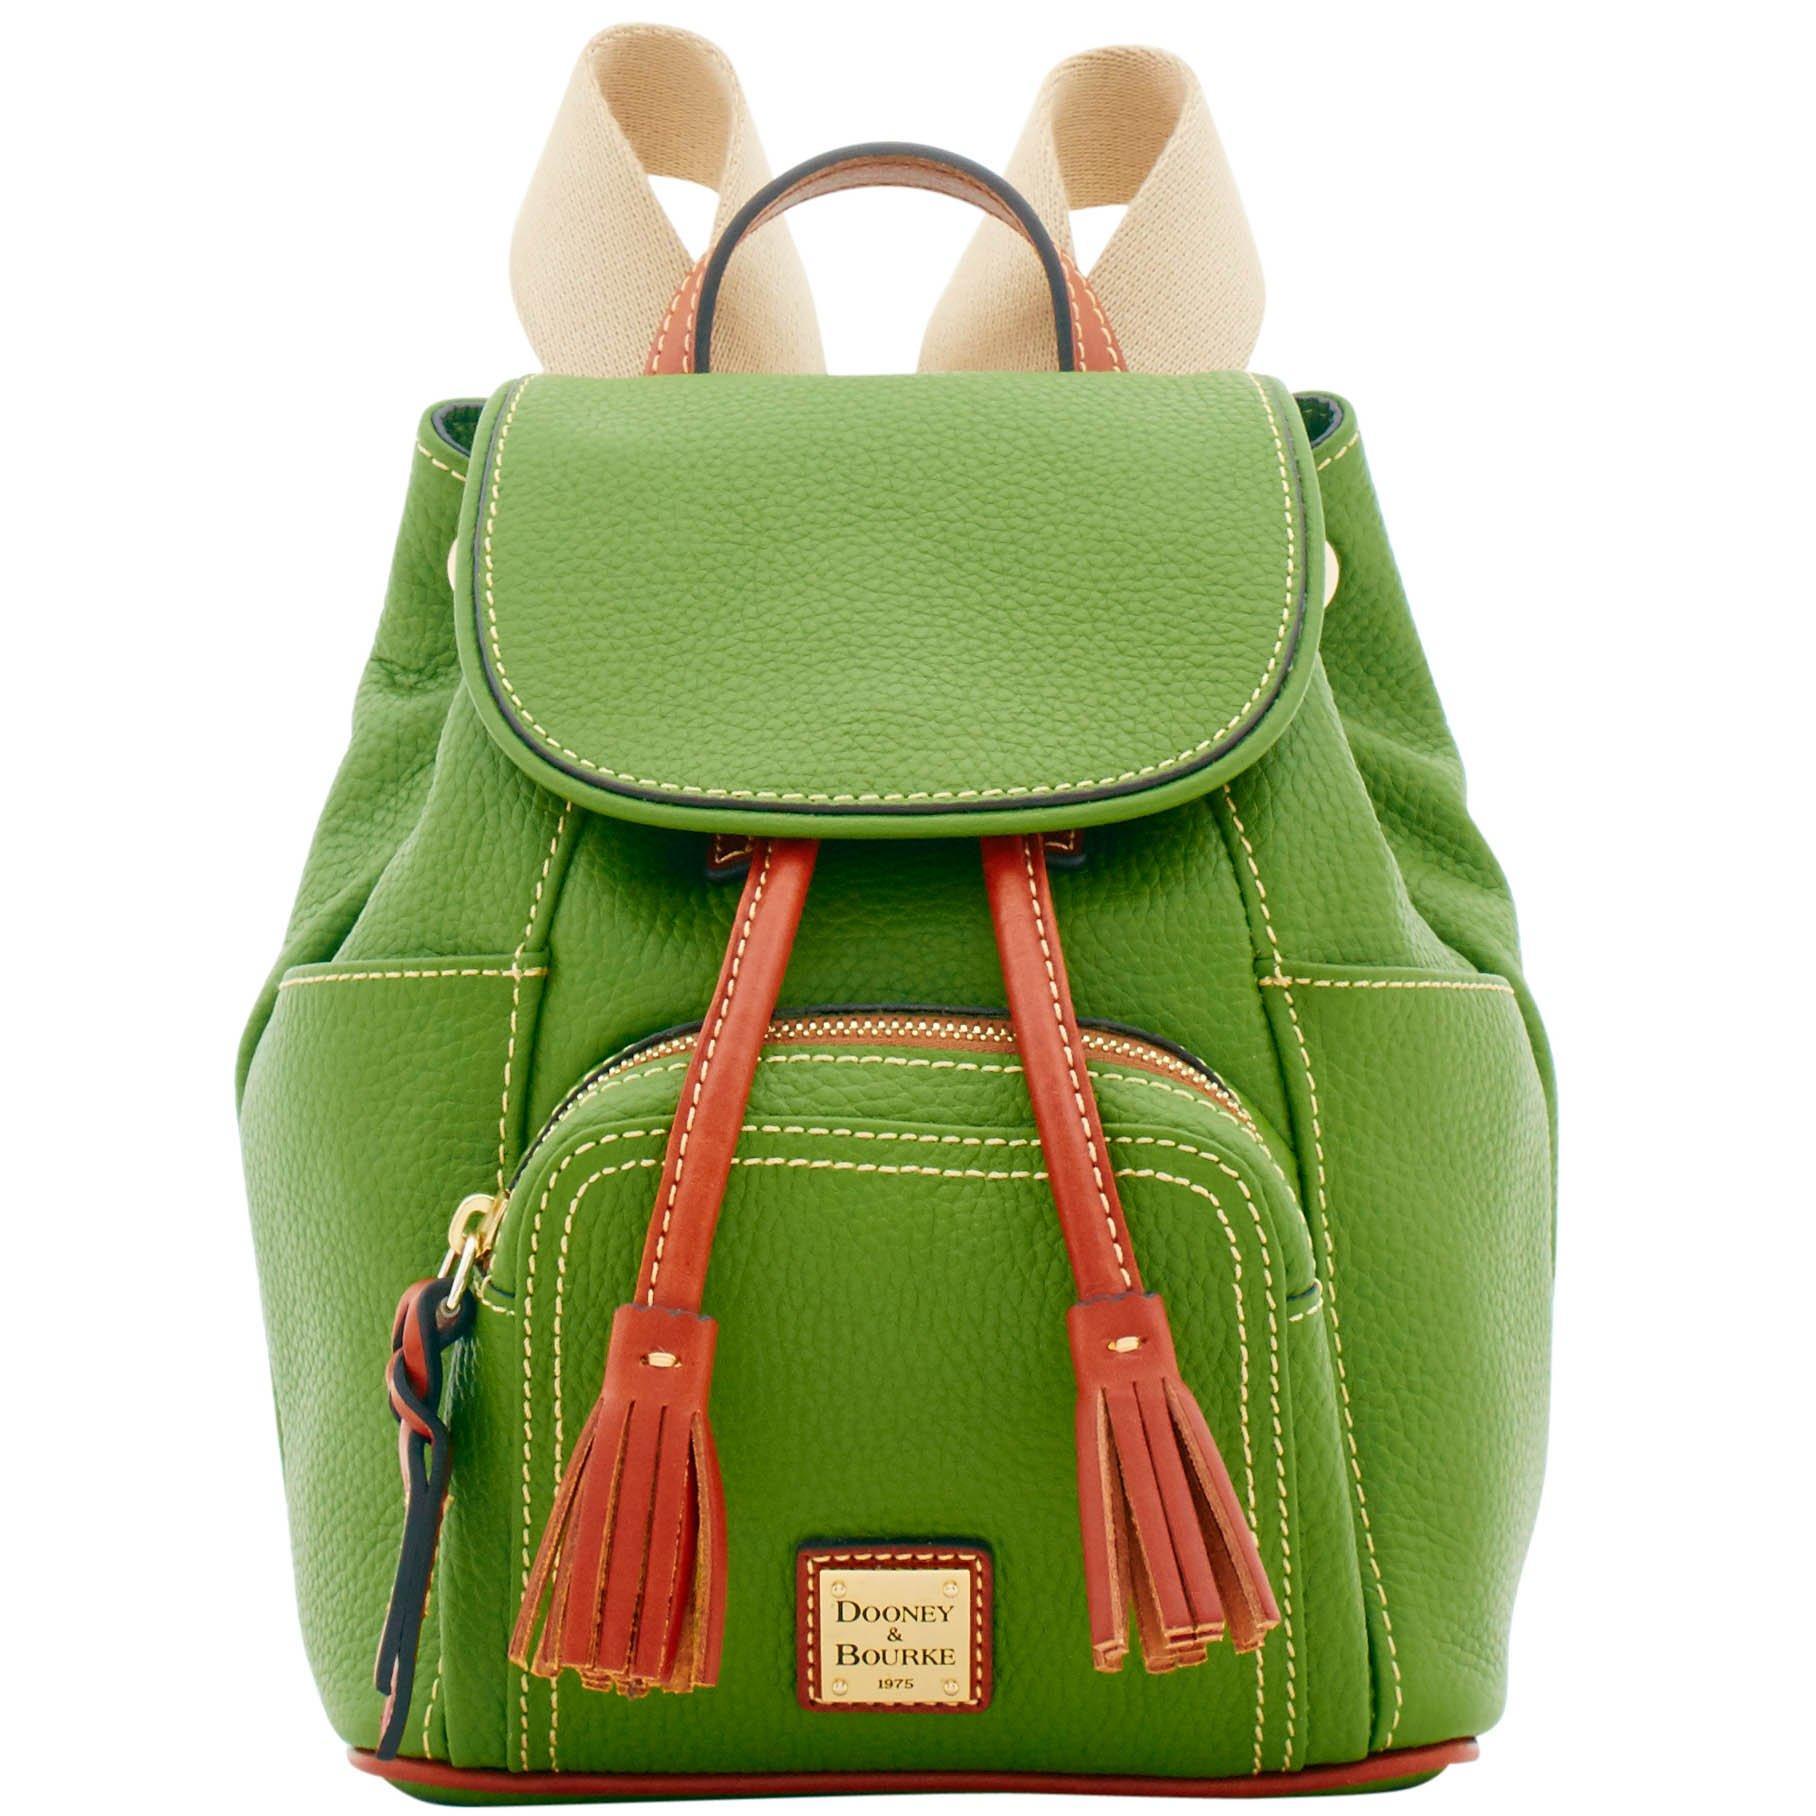 Dooney & Bourke Pebble Grain Small Murphy Backpack in Green | Lyst